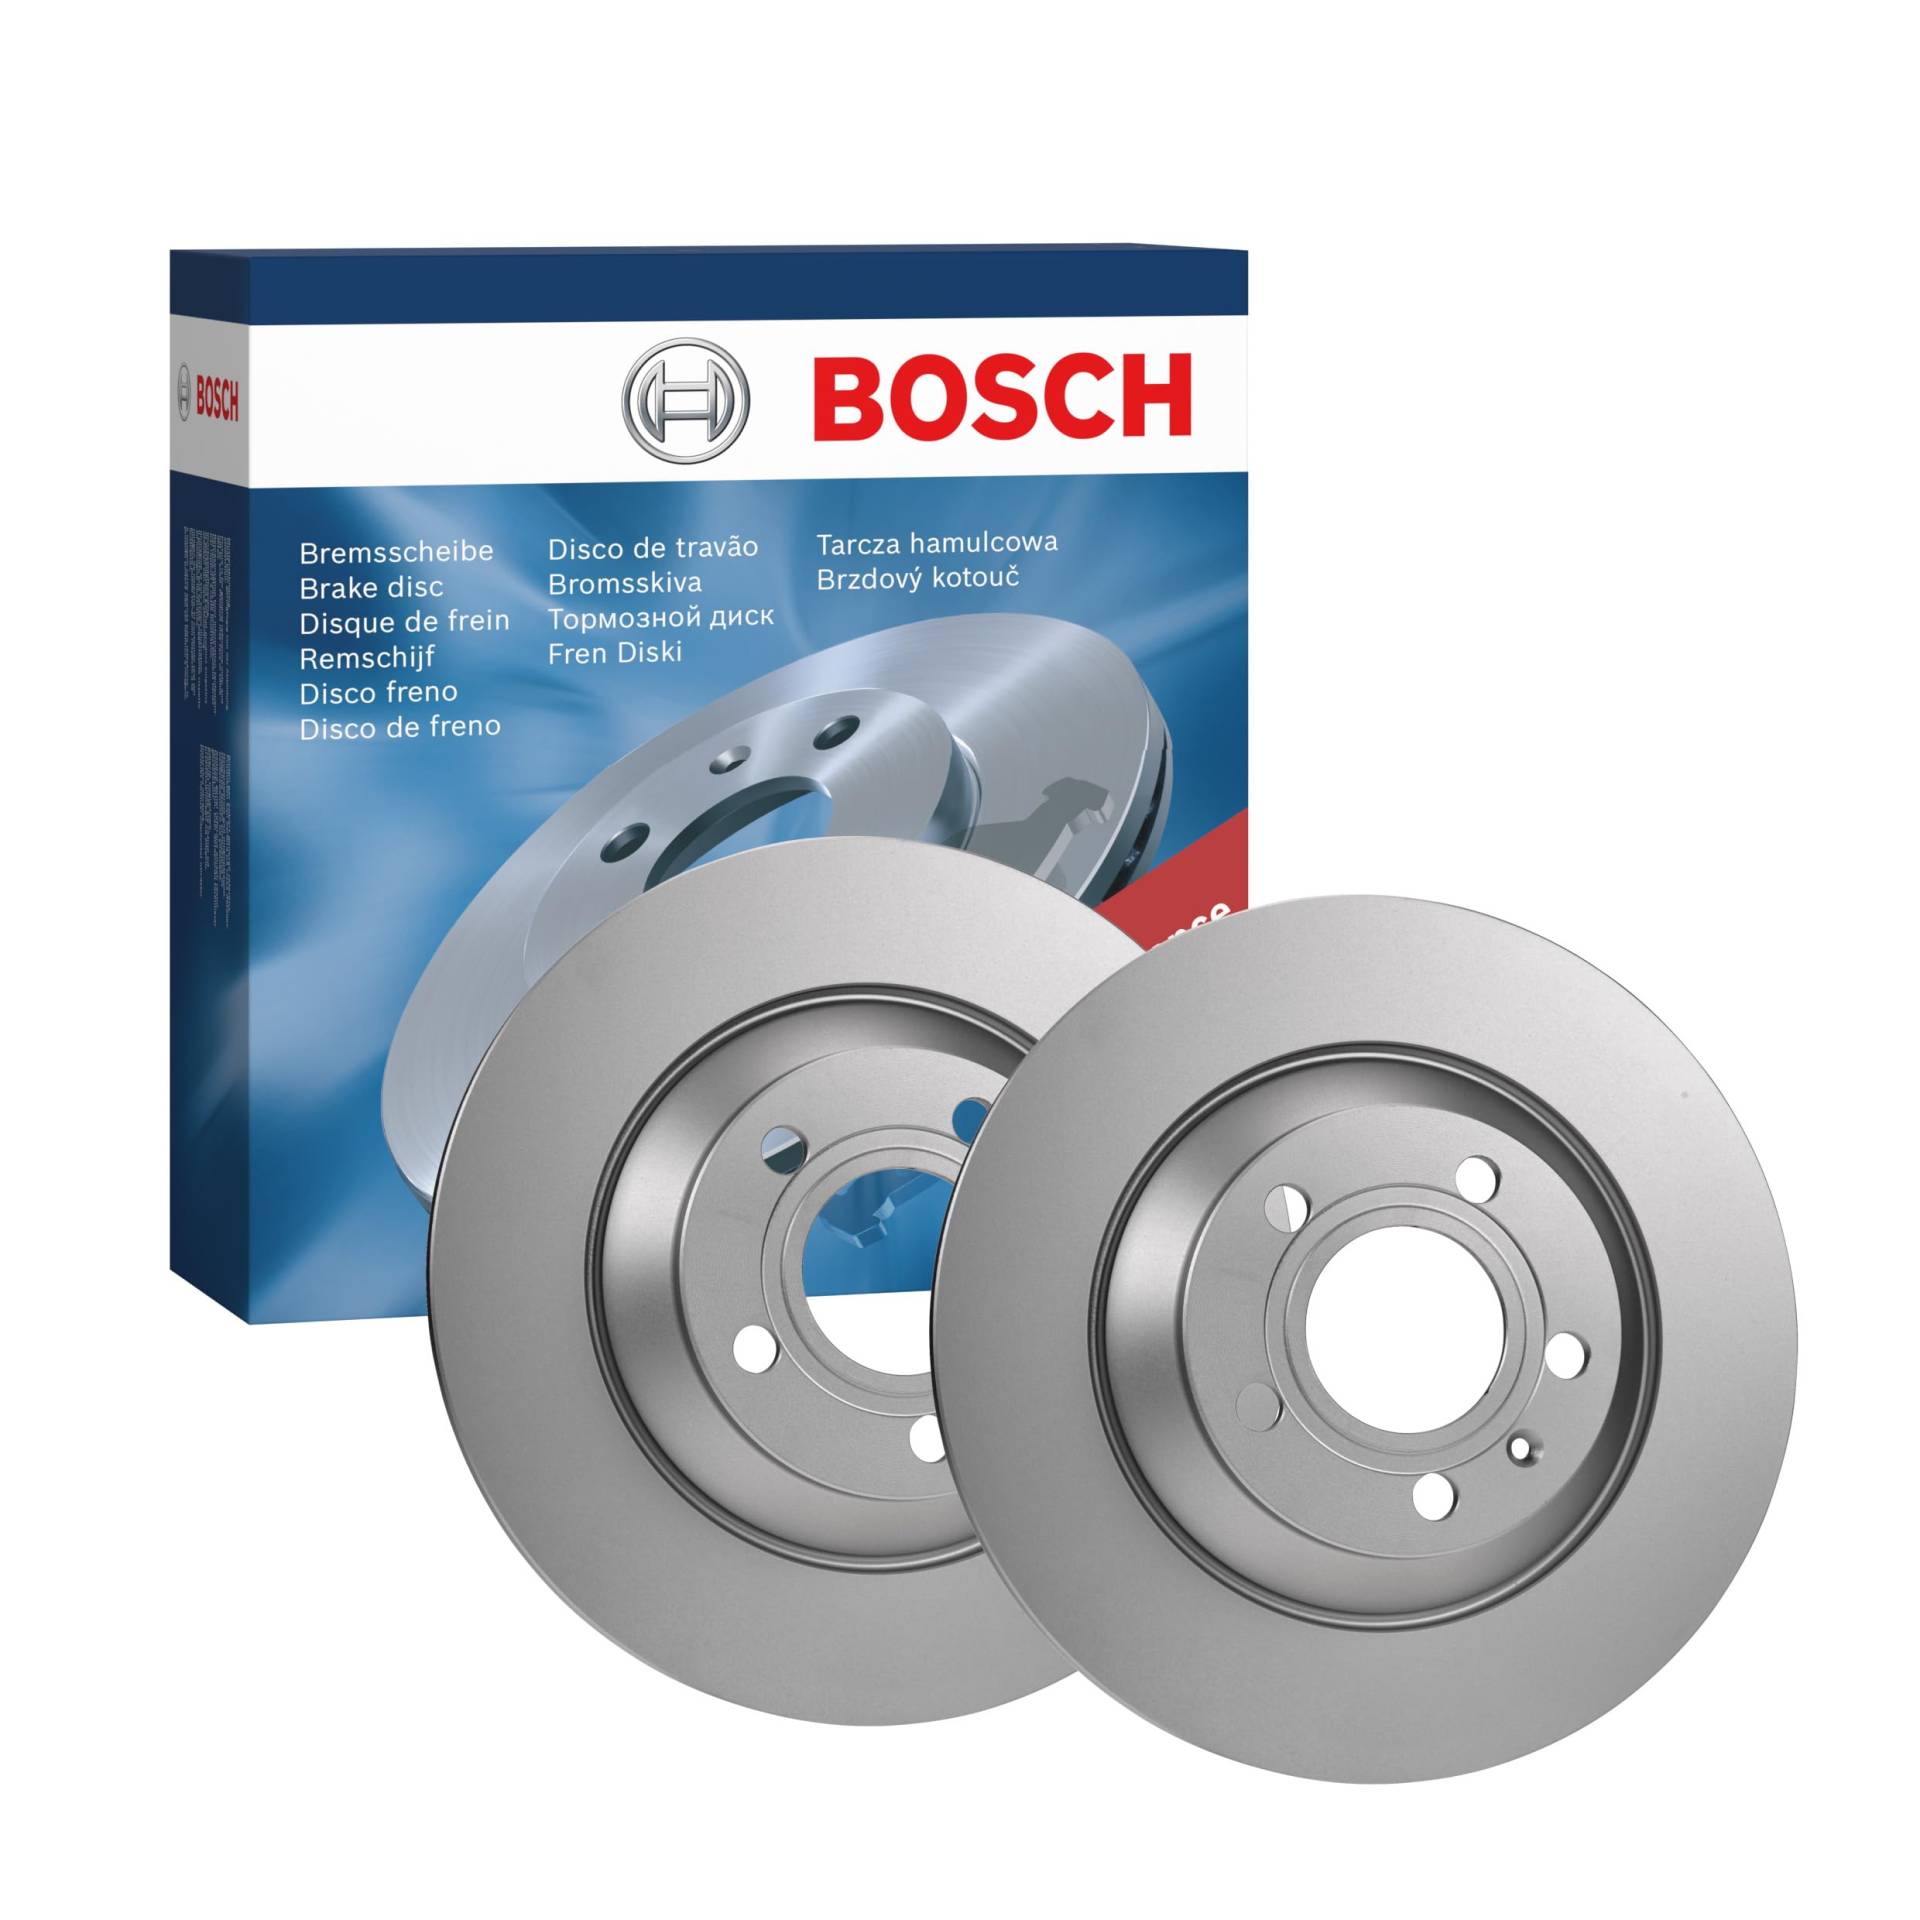 Bosch BD1286 Bremsscheiben - Hinterachse - ECE-R90 Zertifizierung - zwei Bremsscheiben pro Set von Bosch Automotive